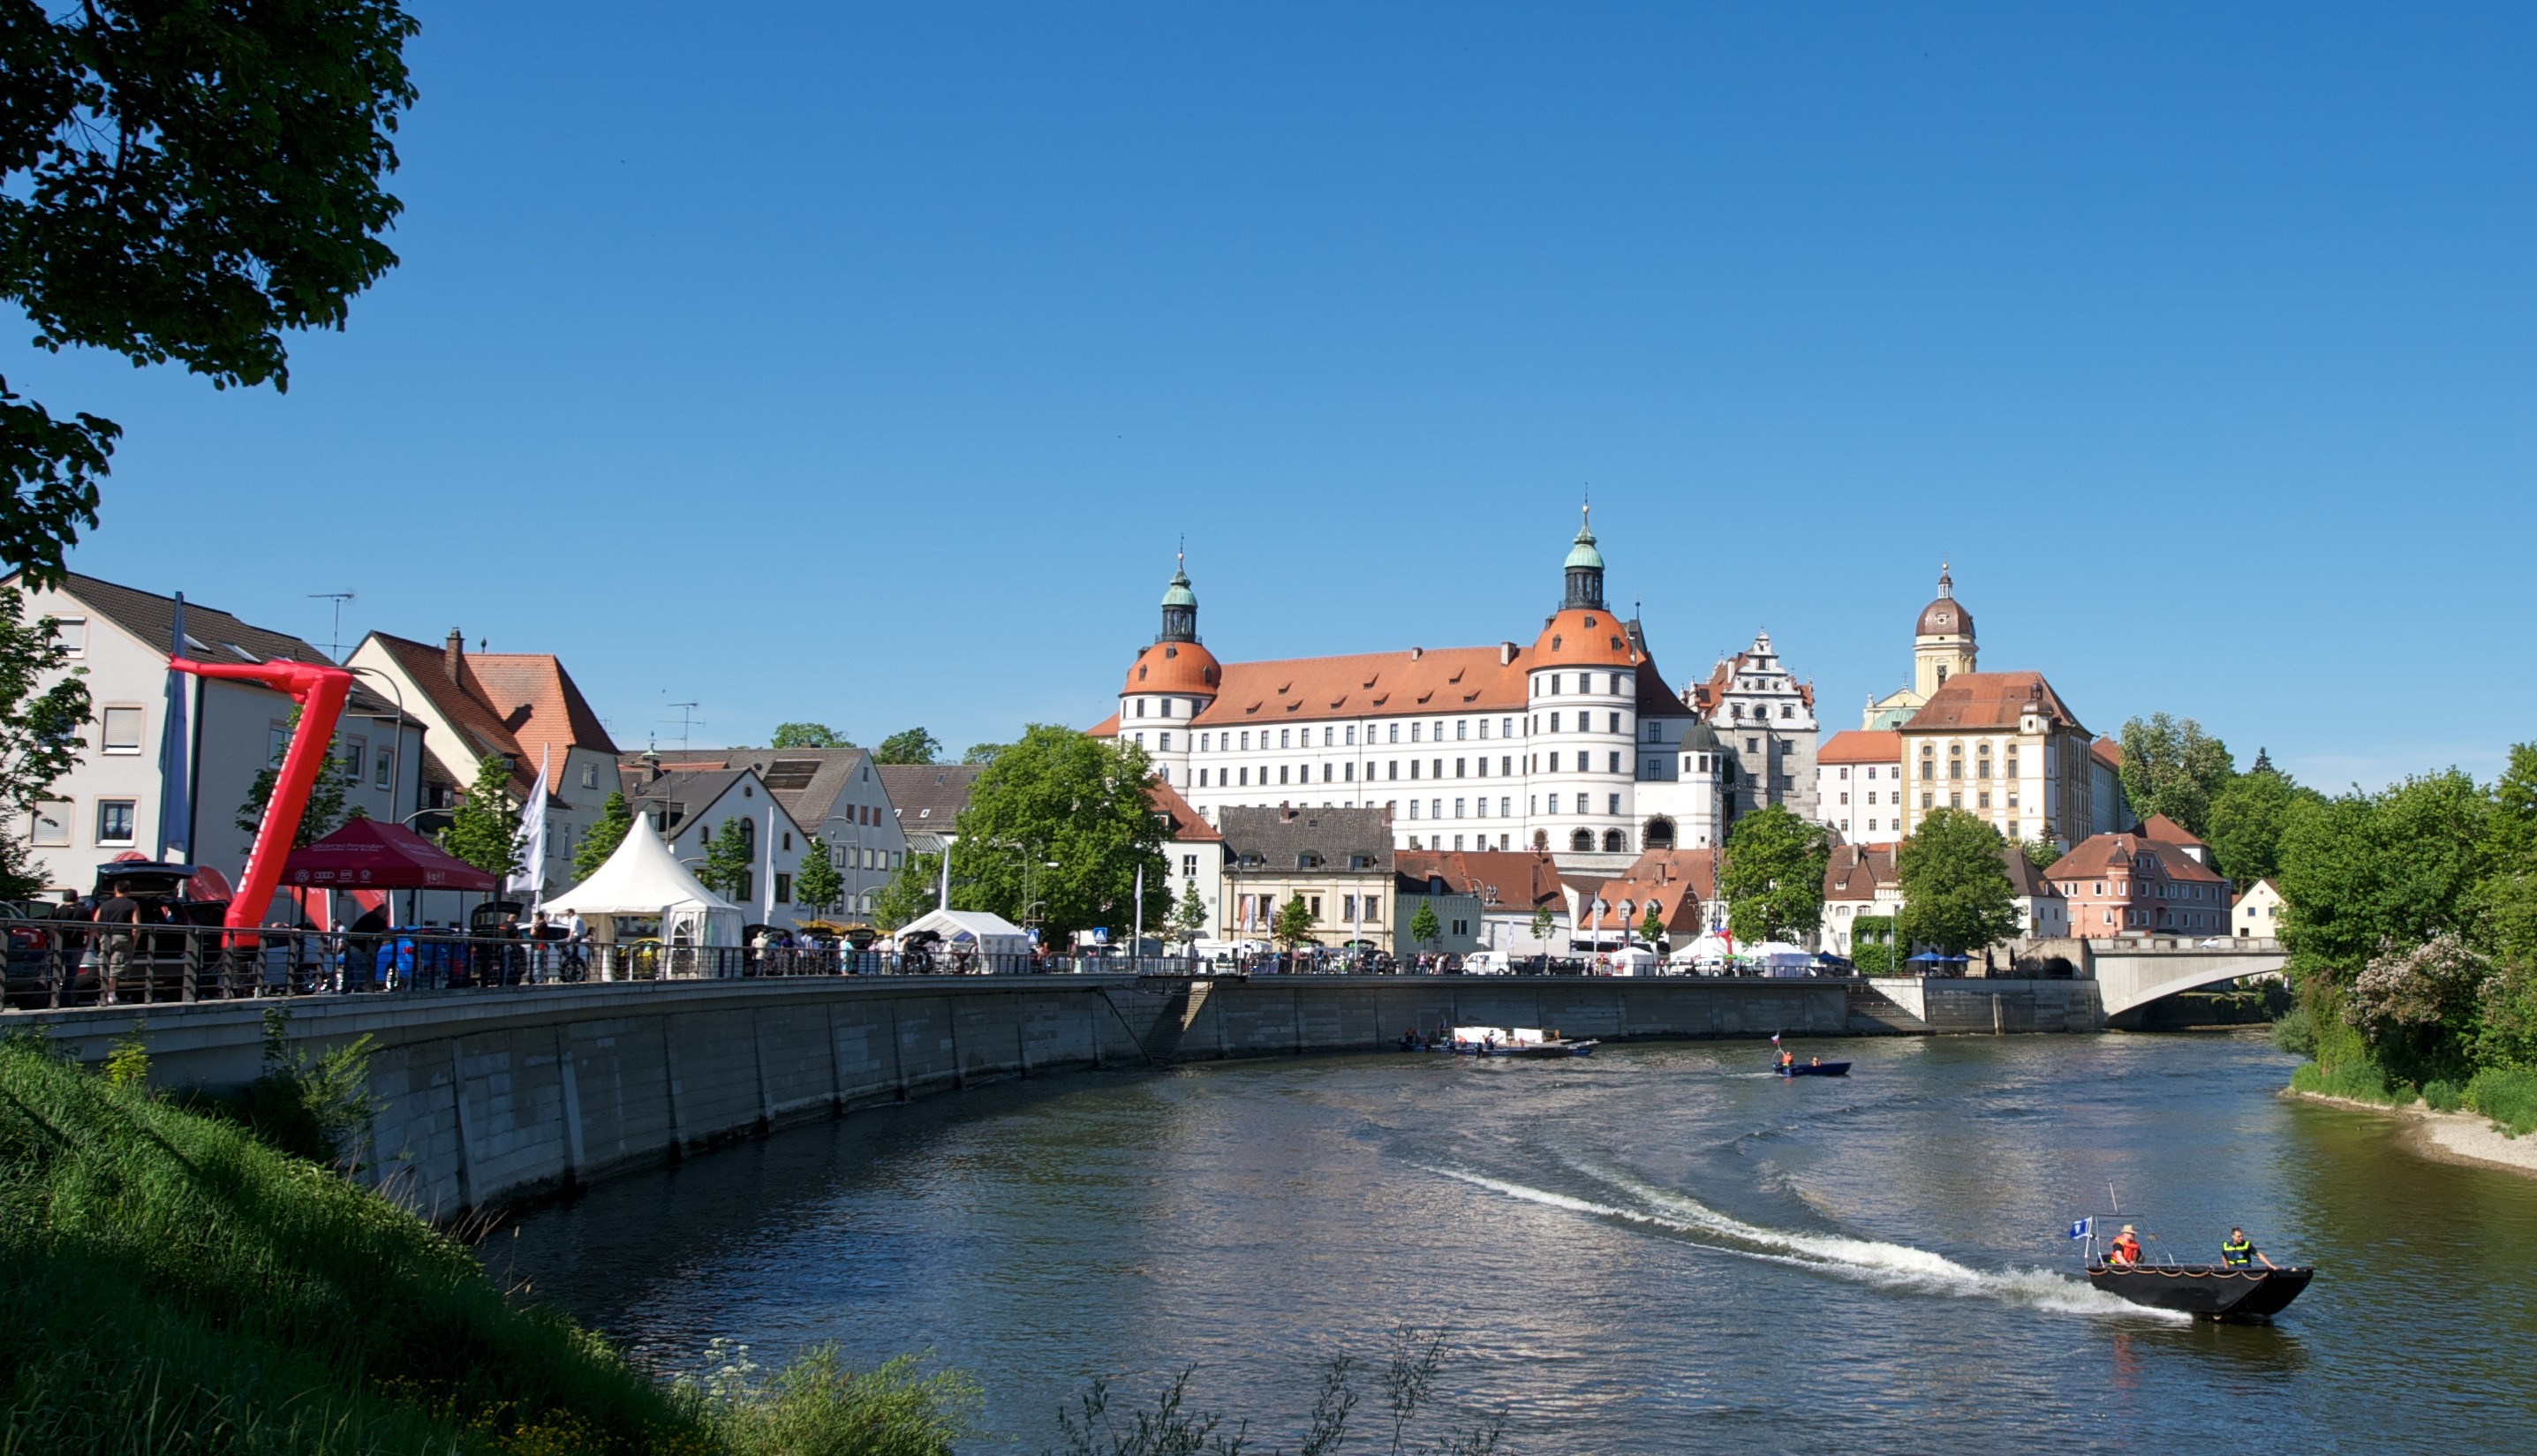 Neue Ampel für mehr Sicherheit - Stadt Neuburg an der Donau